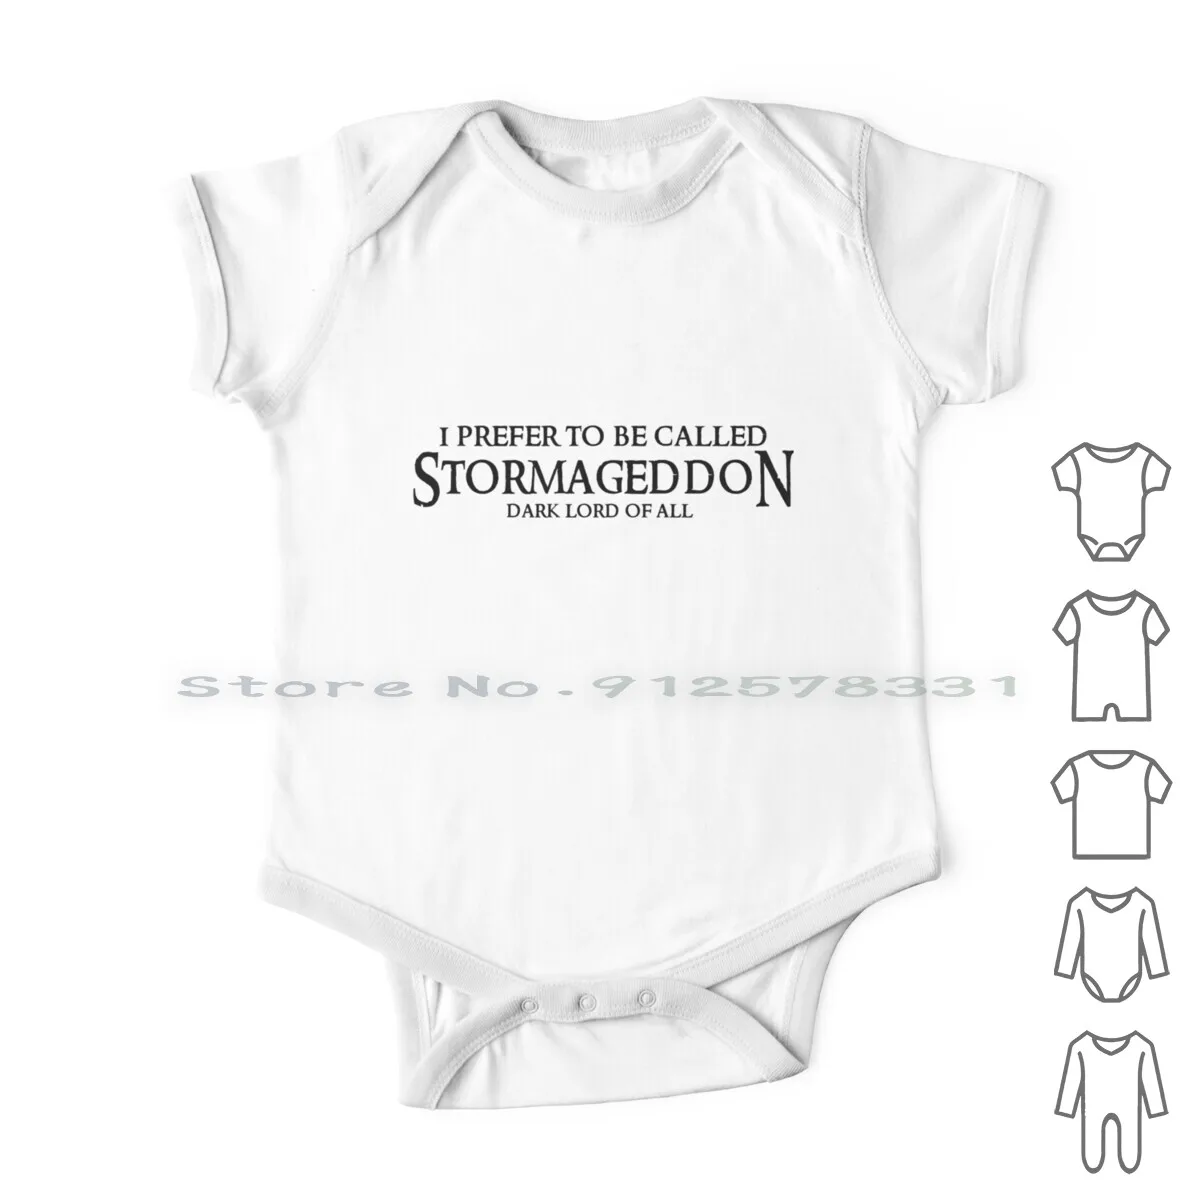 

Одежда для новорожденных Stormageddon комбинезоны хлопковые комбинезоны Dr Who Stormageddon Geek Nerd Baby Dark Lord с длинным рукавом для младенцев